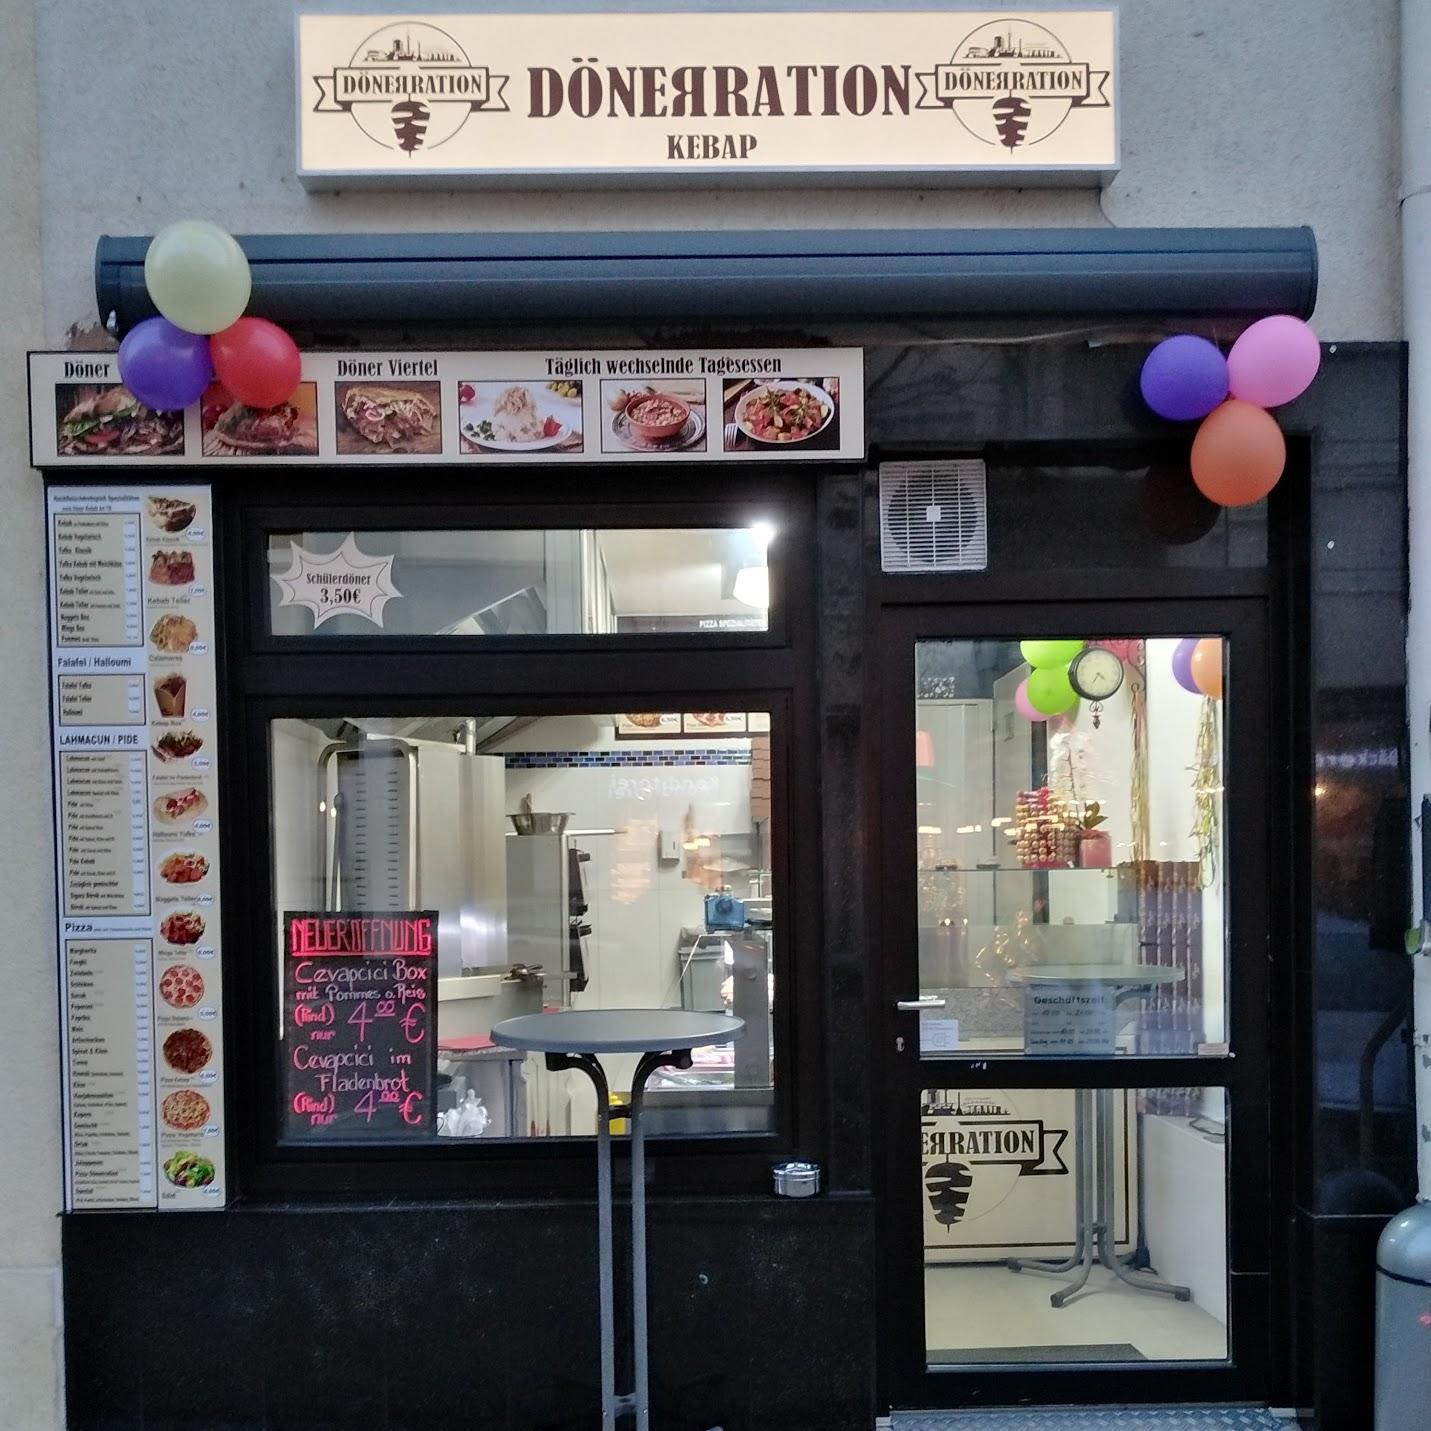 Restaurant "DÖNERRATION" in Stuttgart